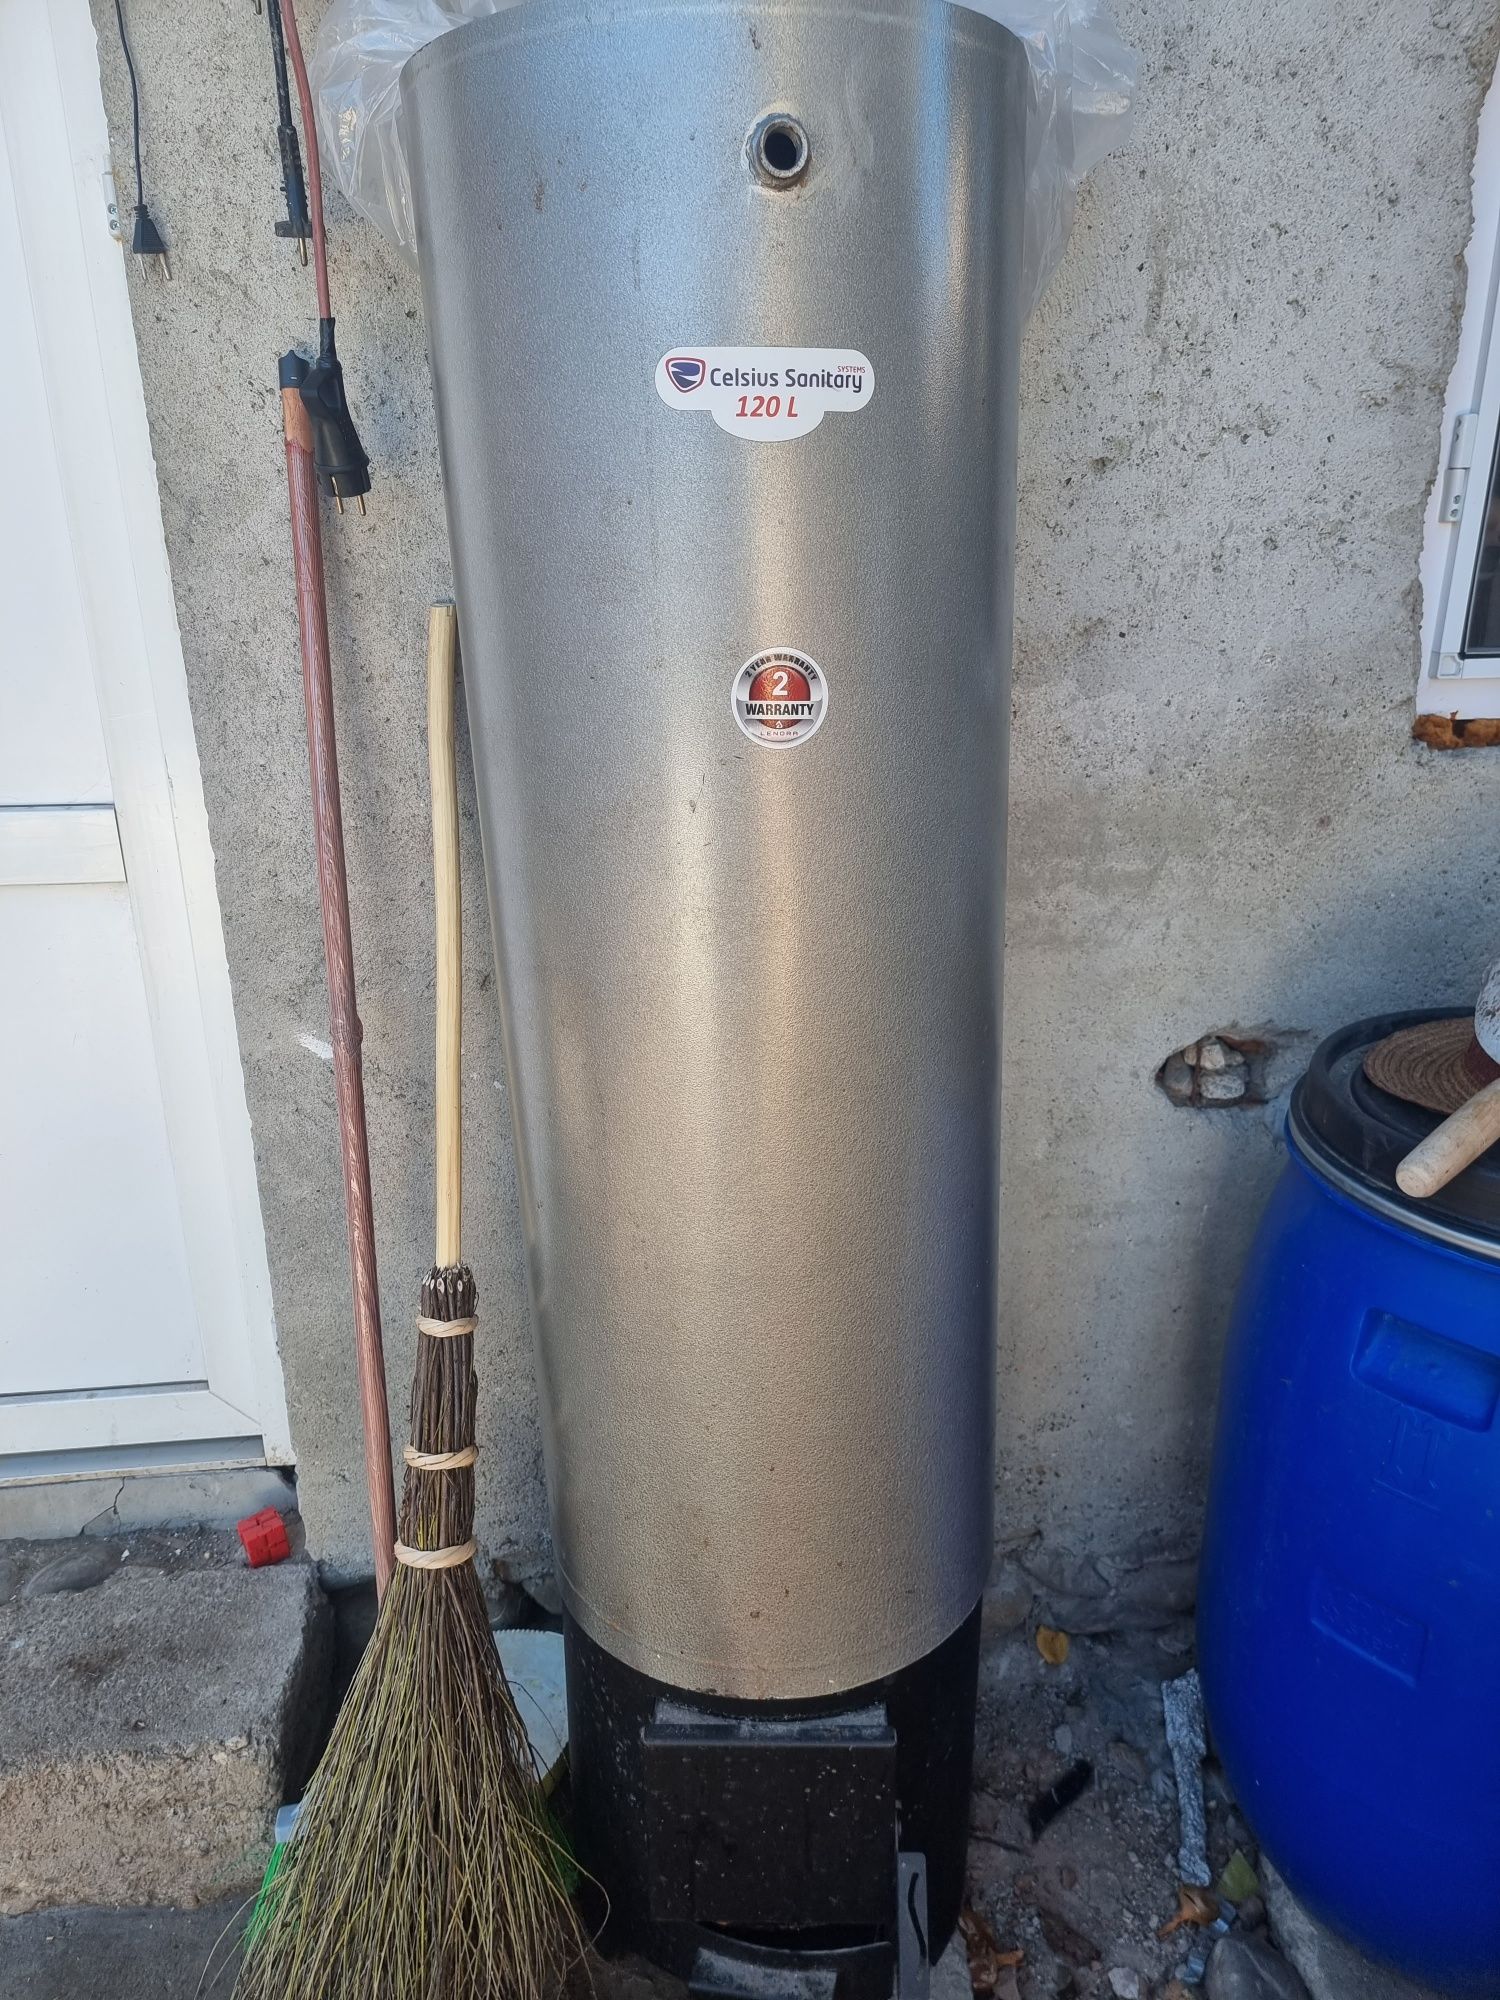 Boiler de baie Celsius Sanitary 120L